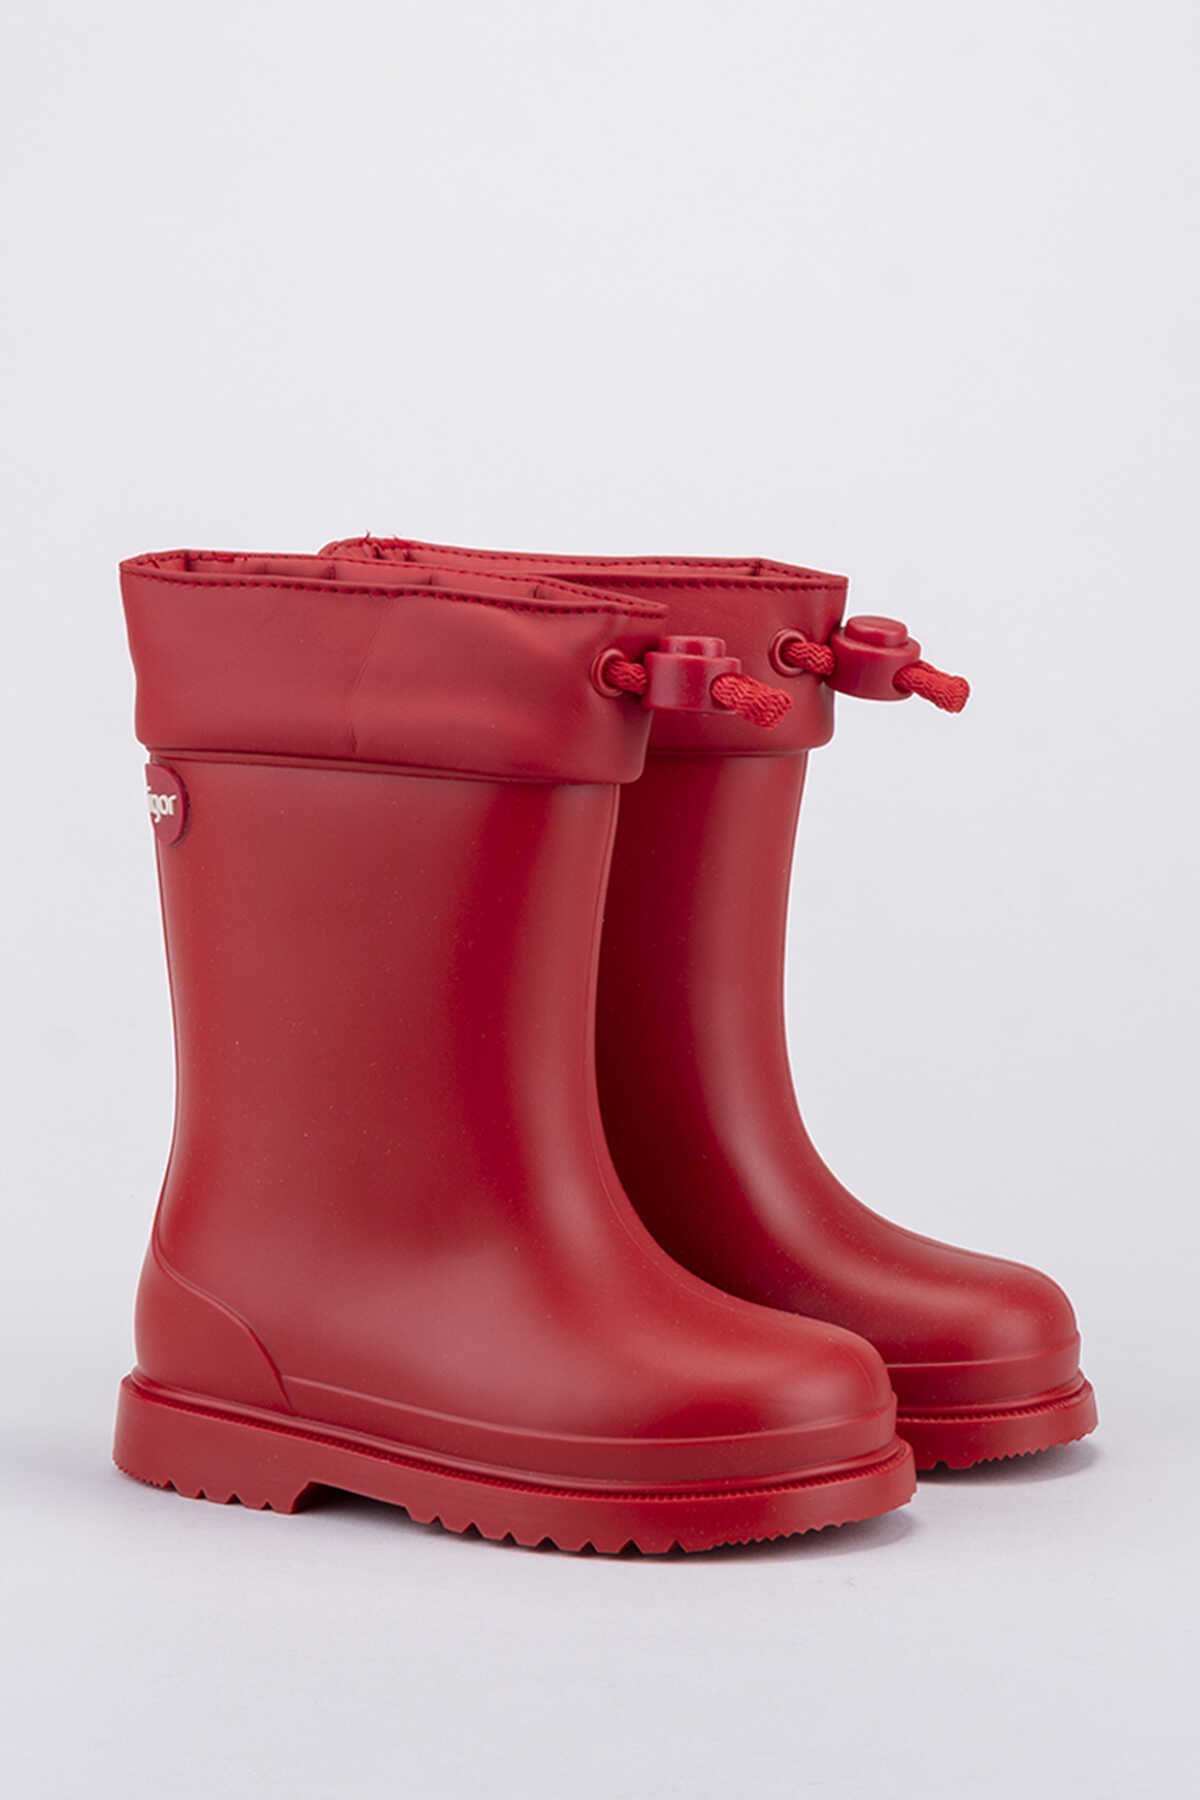 Igor - Igor CHUFO CUELLO Yağmur Çizmesi Kız Kız Çocuk Ayakkabı Kırmızı